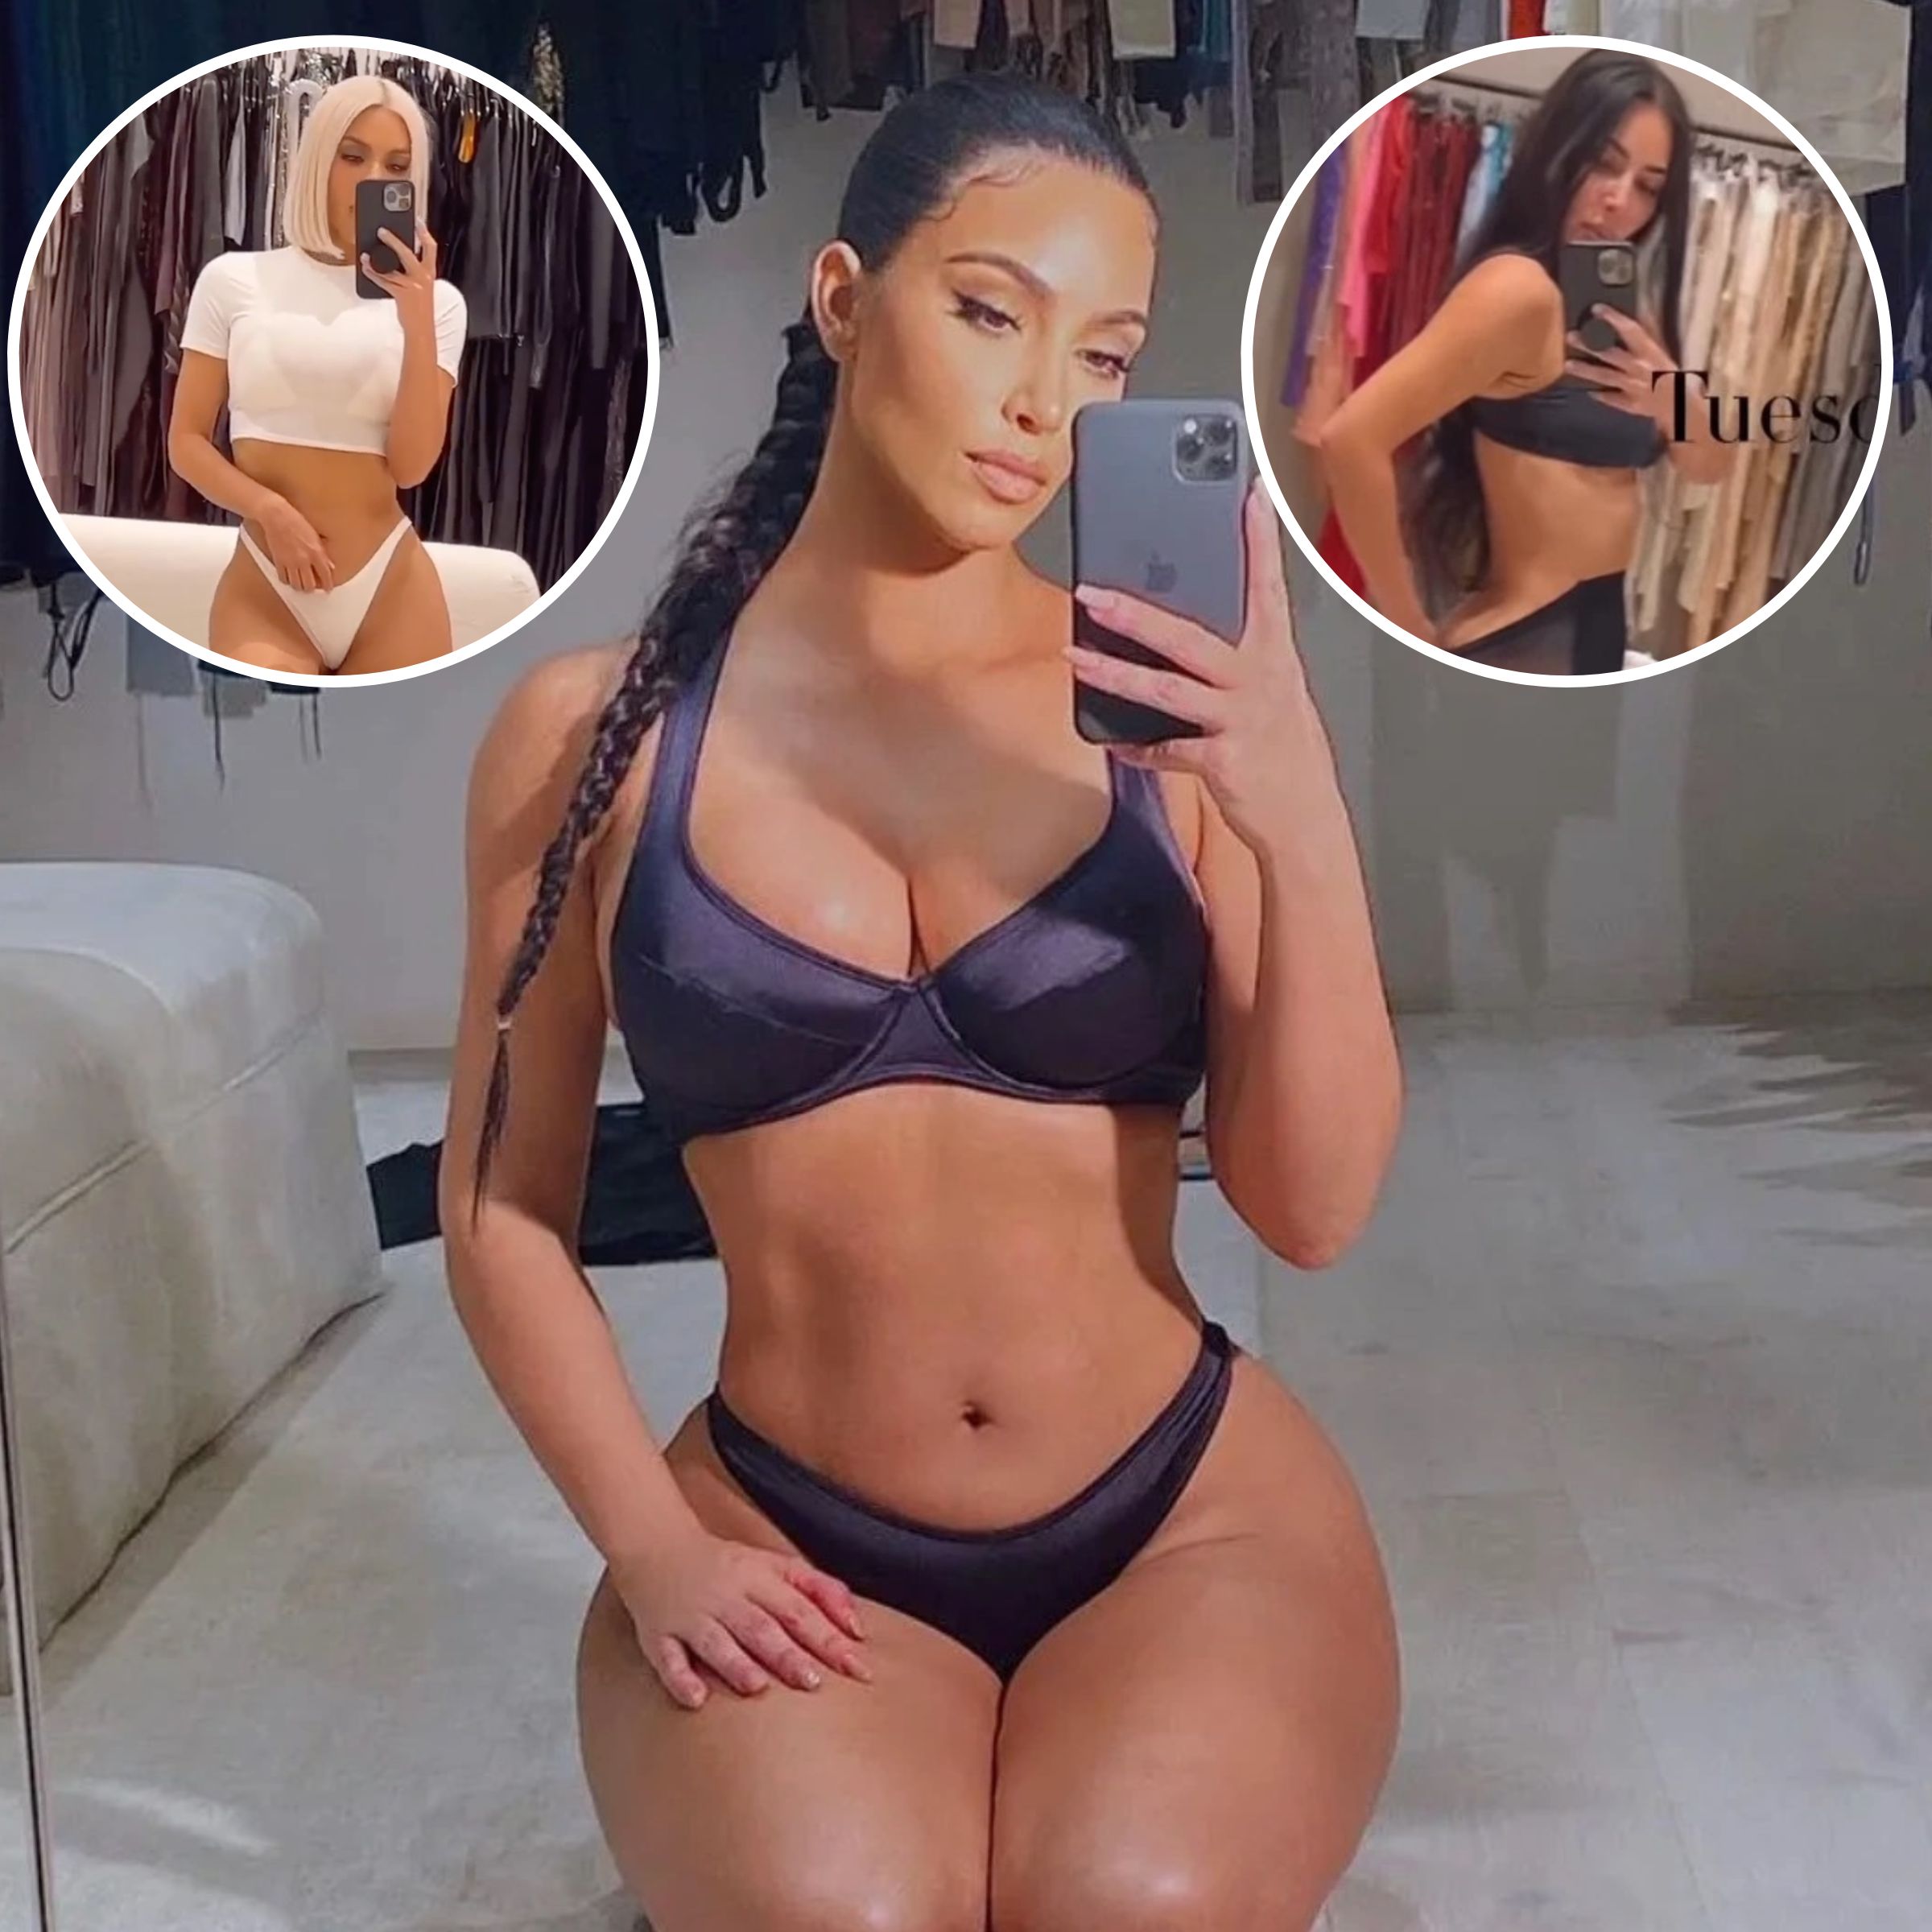 Best Porn Kim Kardashian - Kim Kardashian's Underwear Photos: Sexiest Bra, Panty Pictures